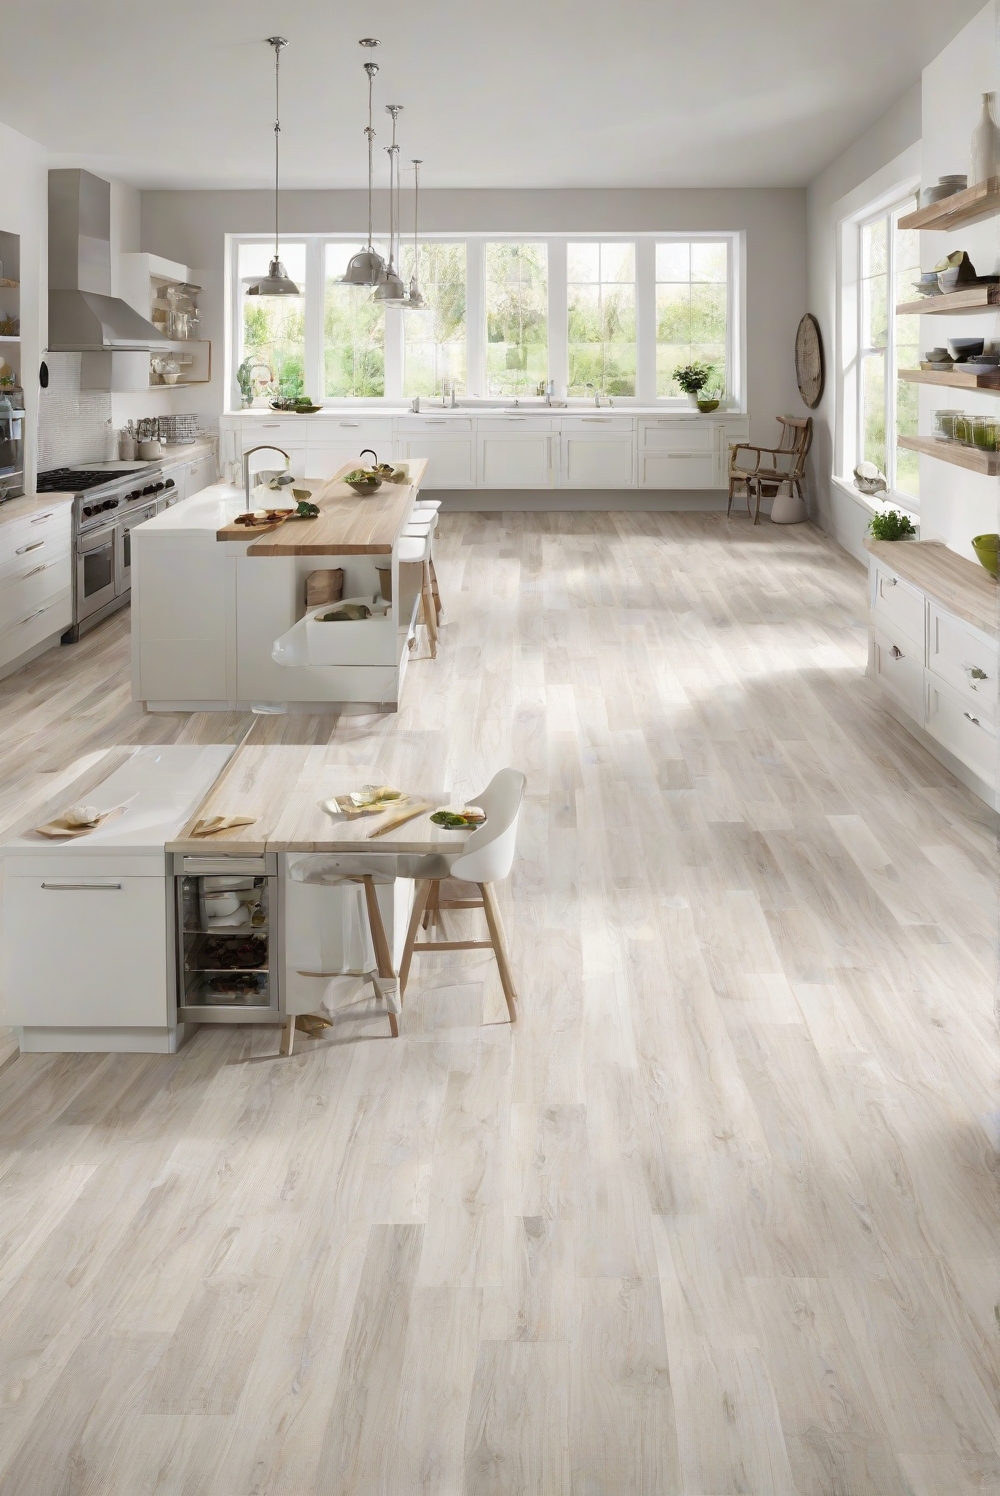 kitchen flooring options, best kitchen flooring, kitchen flooring ideas, flooring for kitchen, tile flooring for kitchen, laminate flooring kitchen, hardwood kitchen flooring